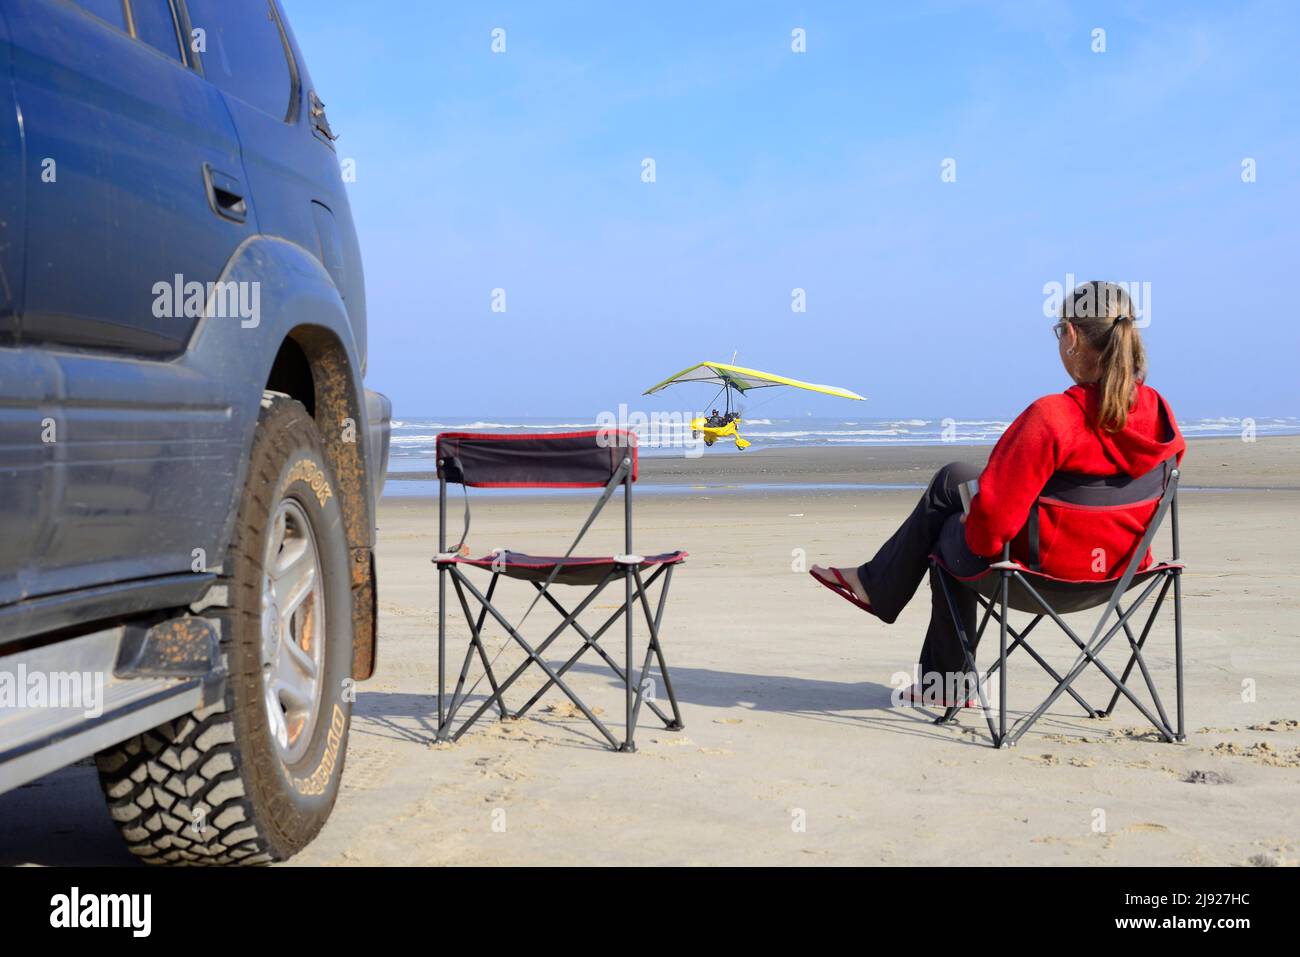 Frau, die auf einem Campingstuhl neben einem Geländewagen am Strand sitzt und ein leichtes Flugzeug beim Start beobachtet, Ulm, Torres, Rio Grande do Sul, Brasilien Stockfoto